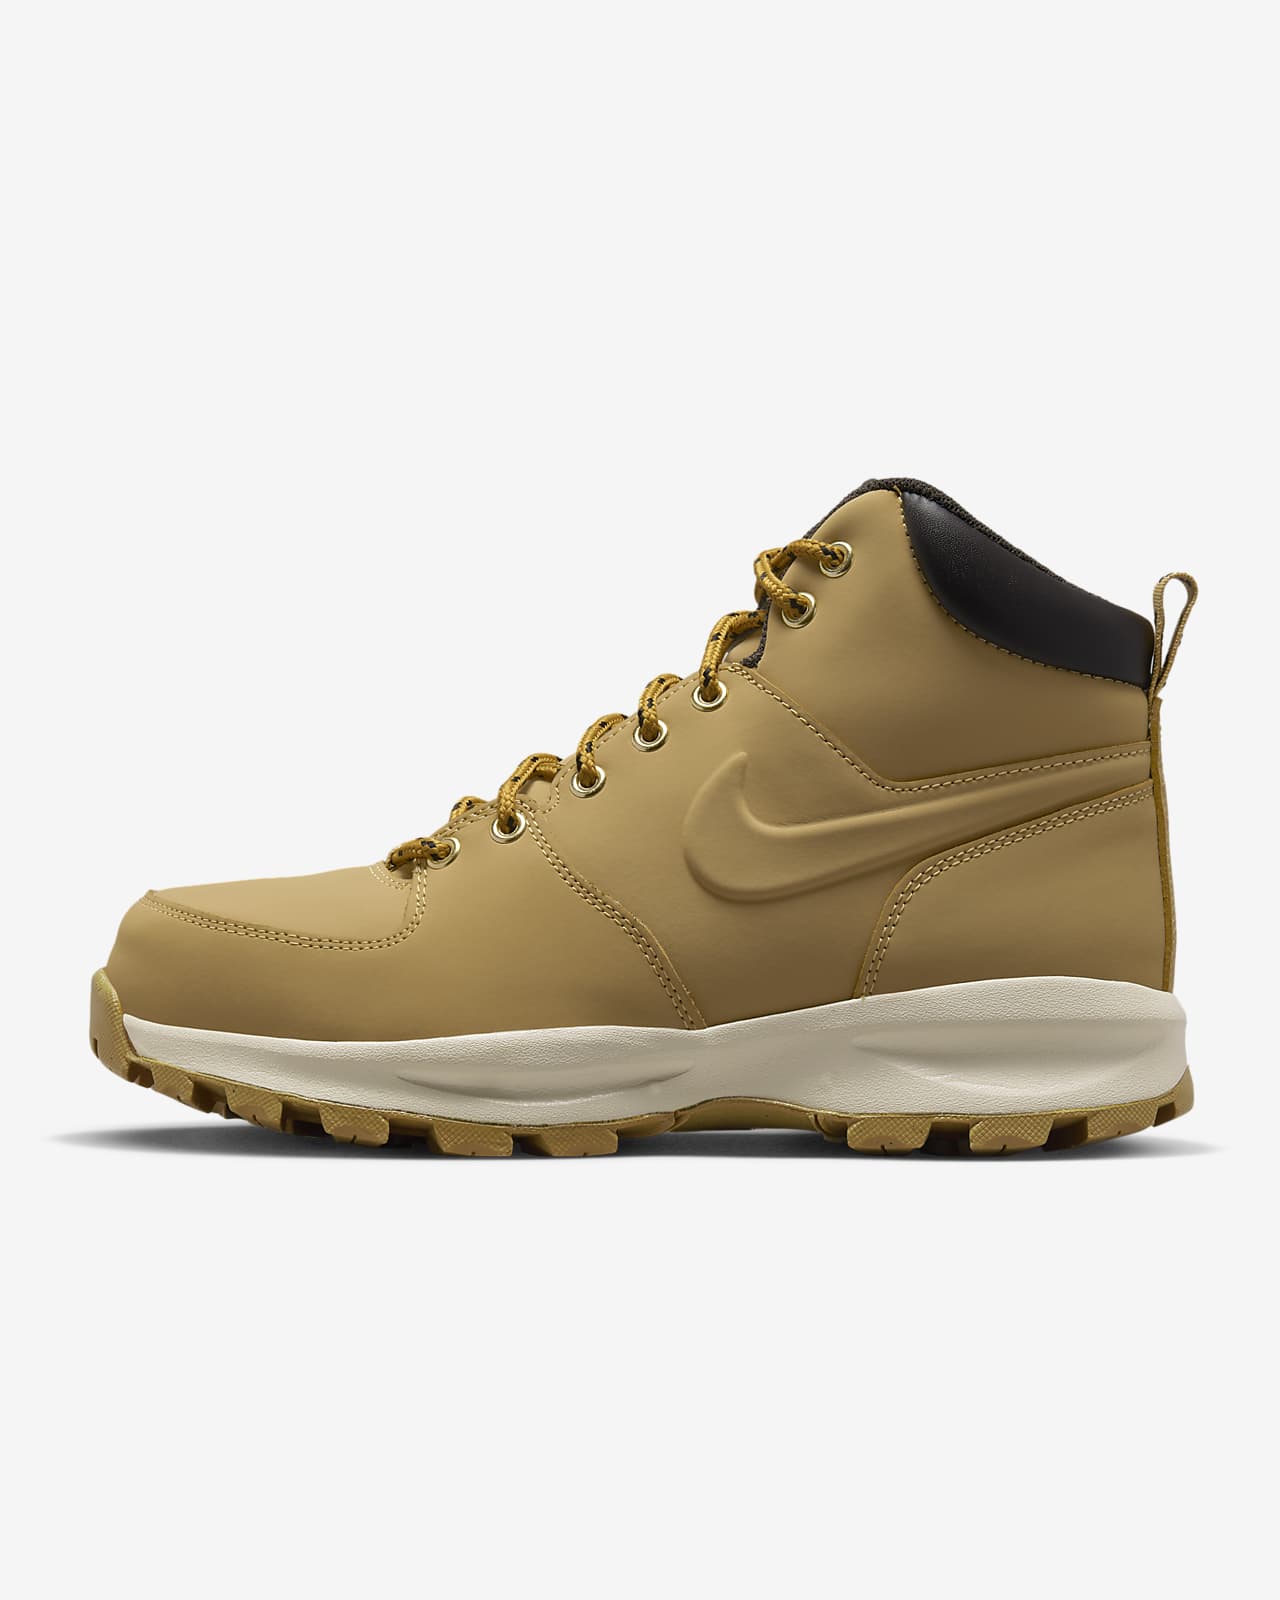 De er vinter slange Nike Manoa Leather-støvler til mænd. Nike DK